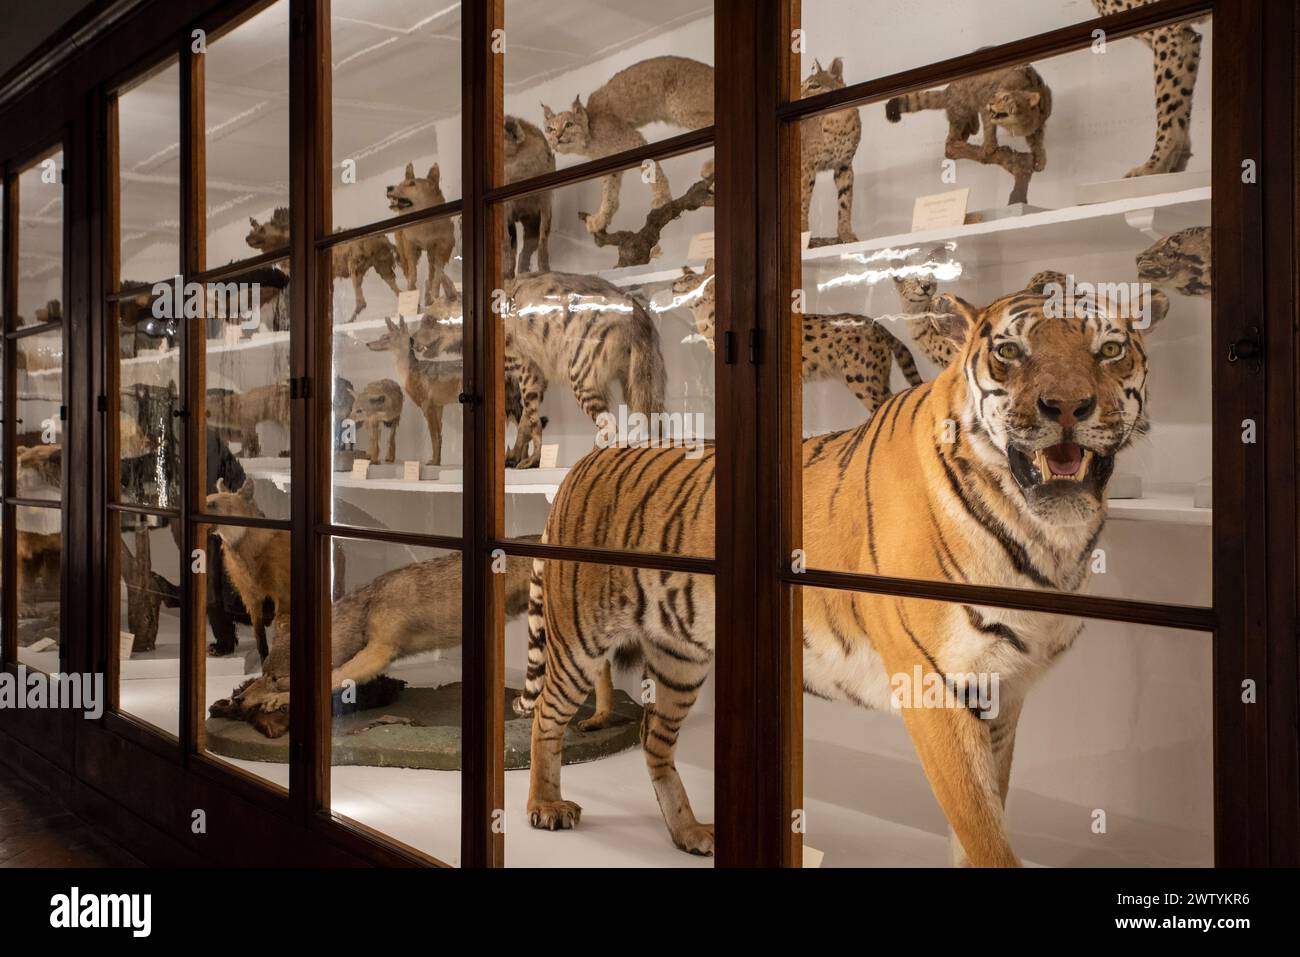 Tiger zusammen mit anderen gefährdeten Katzen in einer Vitrine im naturwissenschaftlichen Museum. Stockfoto